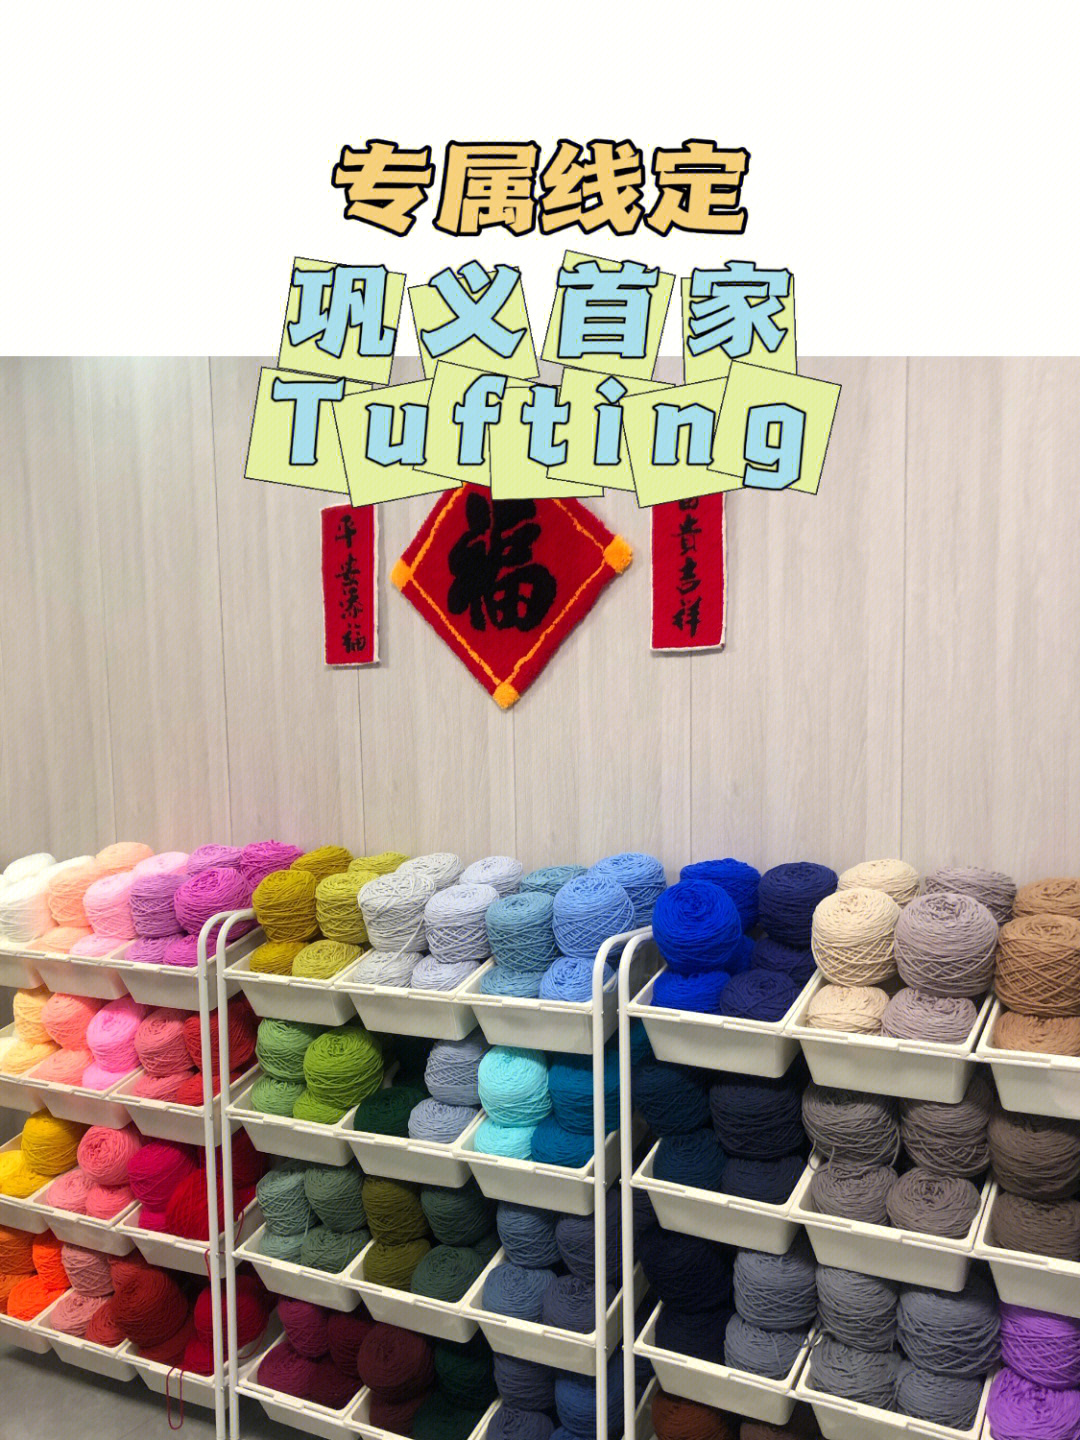 的体验过程,是玩毛线的大型填色游戏,是tututu～03店内提供专业设备